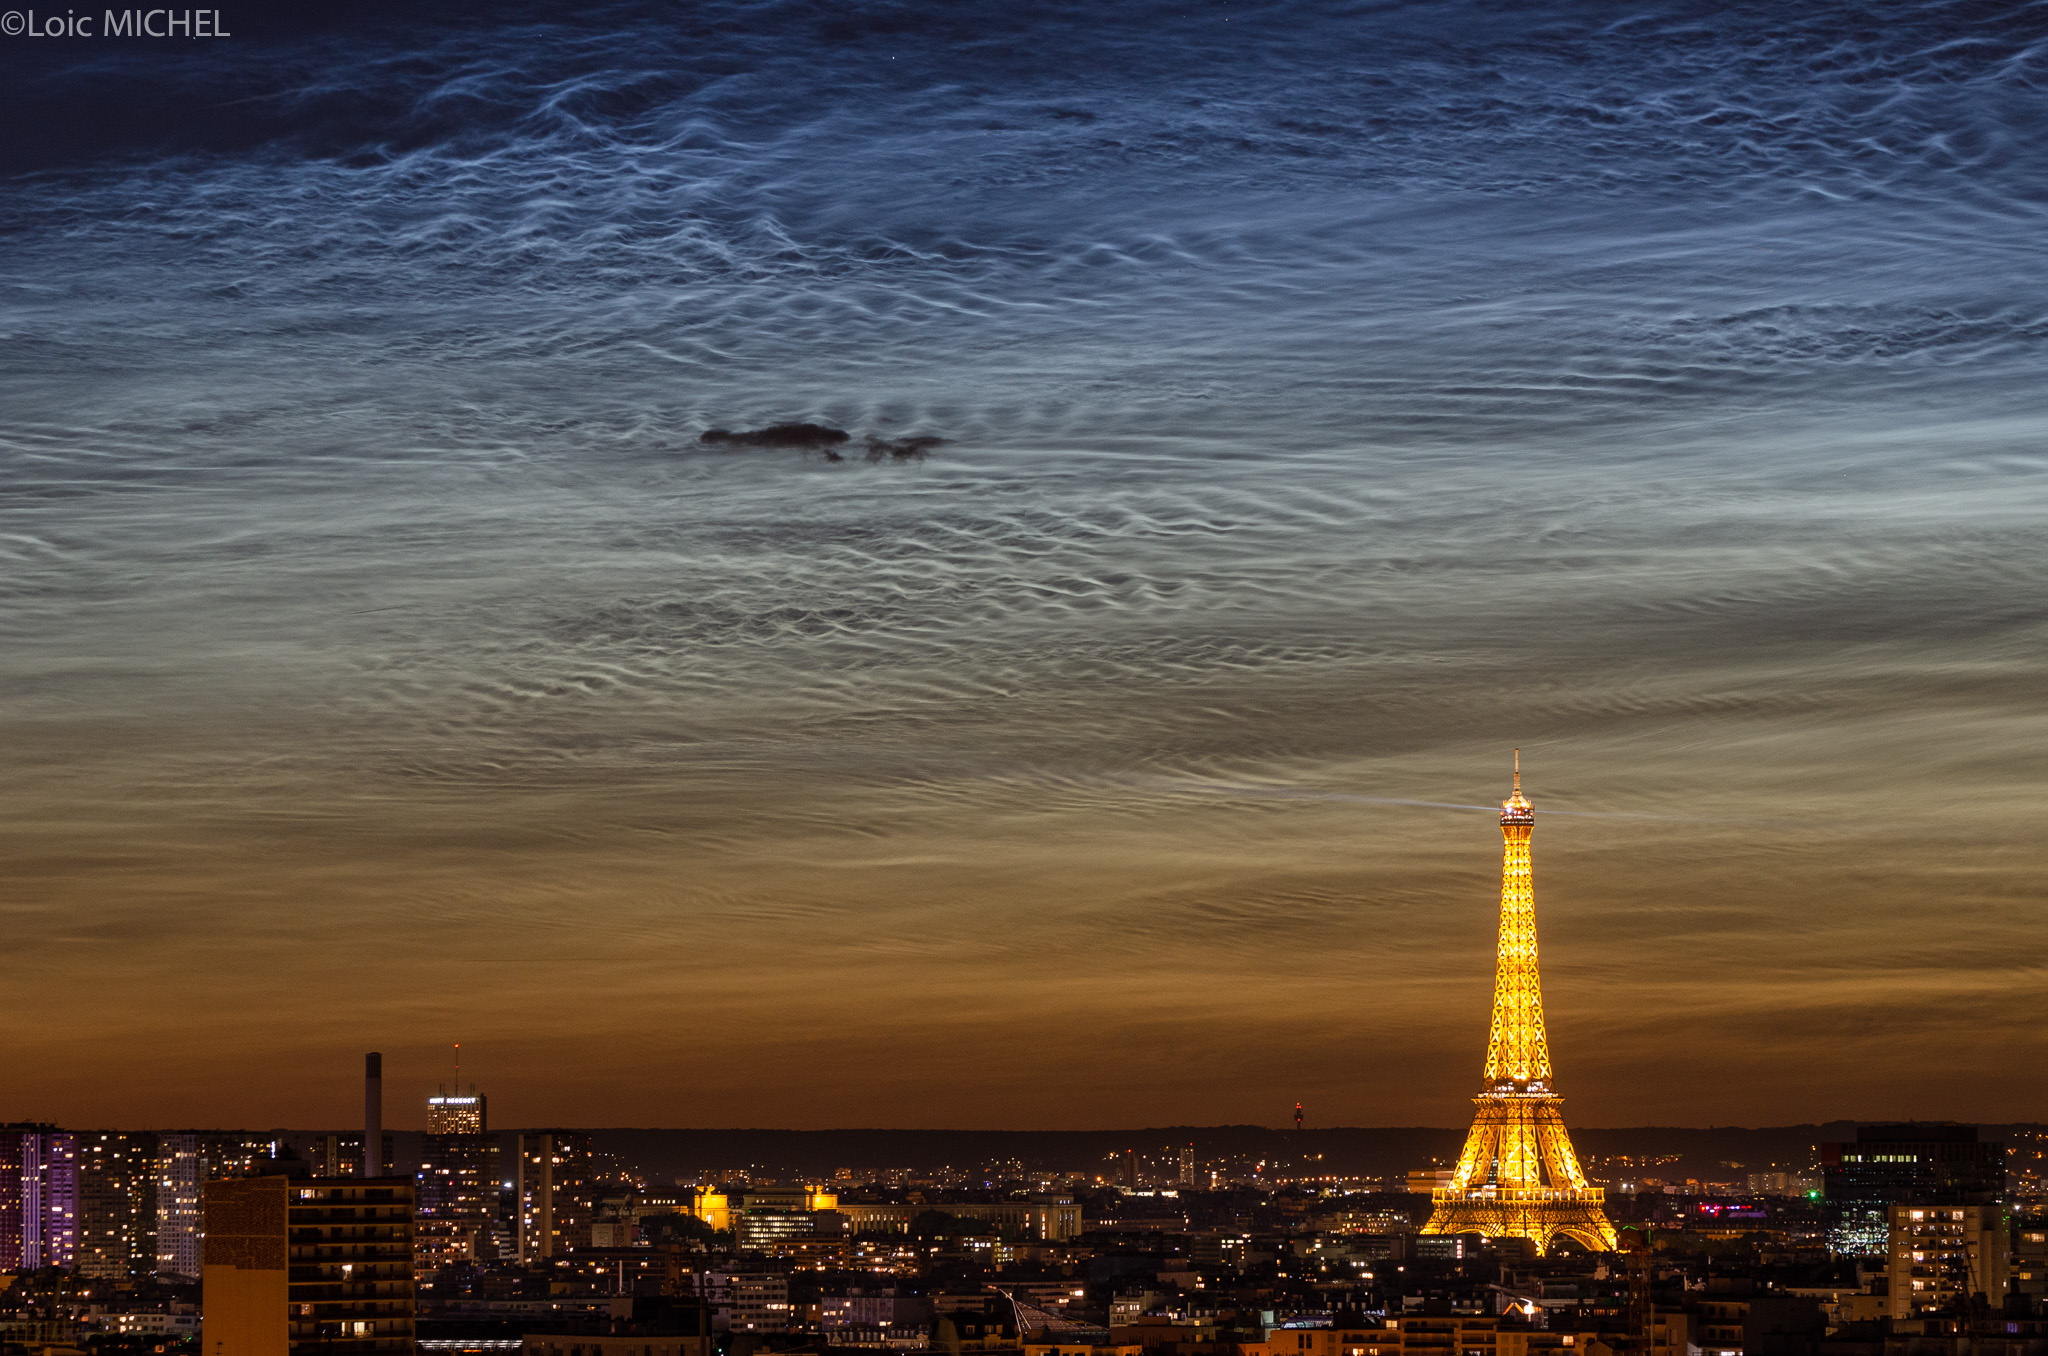 APOD: 2019 June 28 - A Solstice Night in Paris